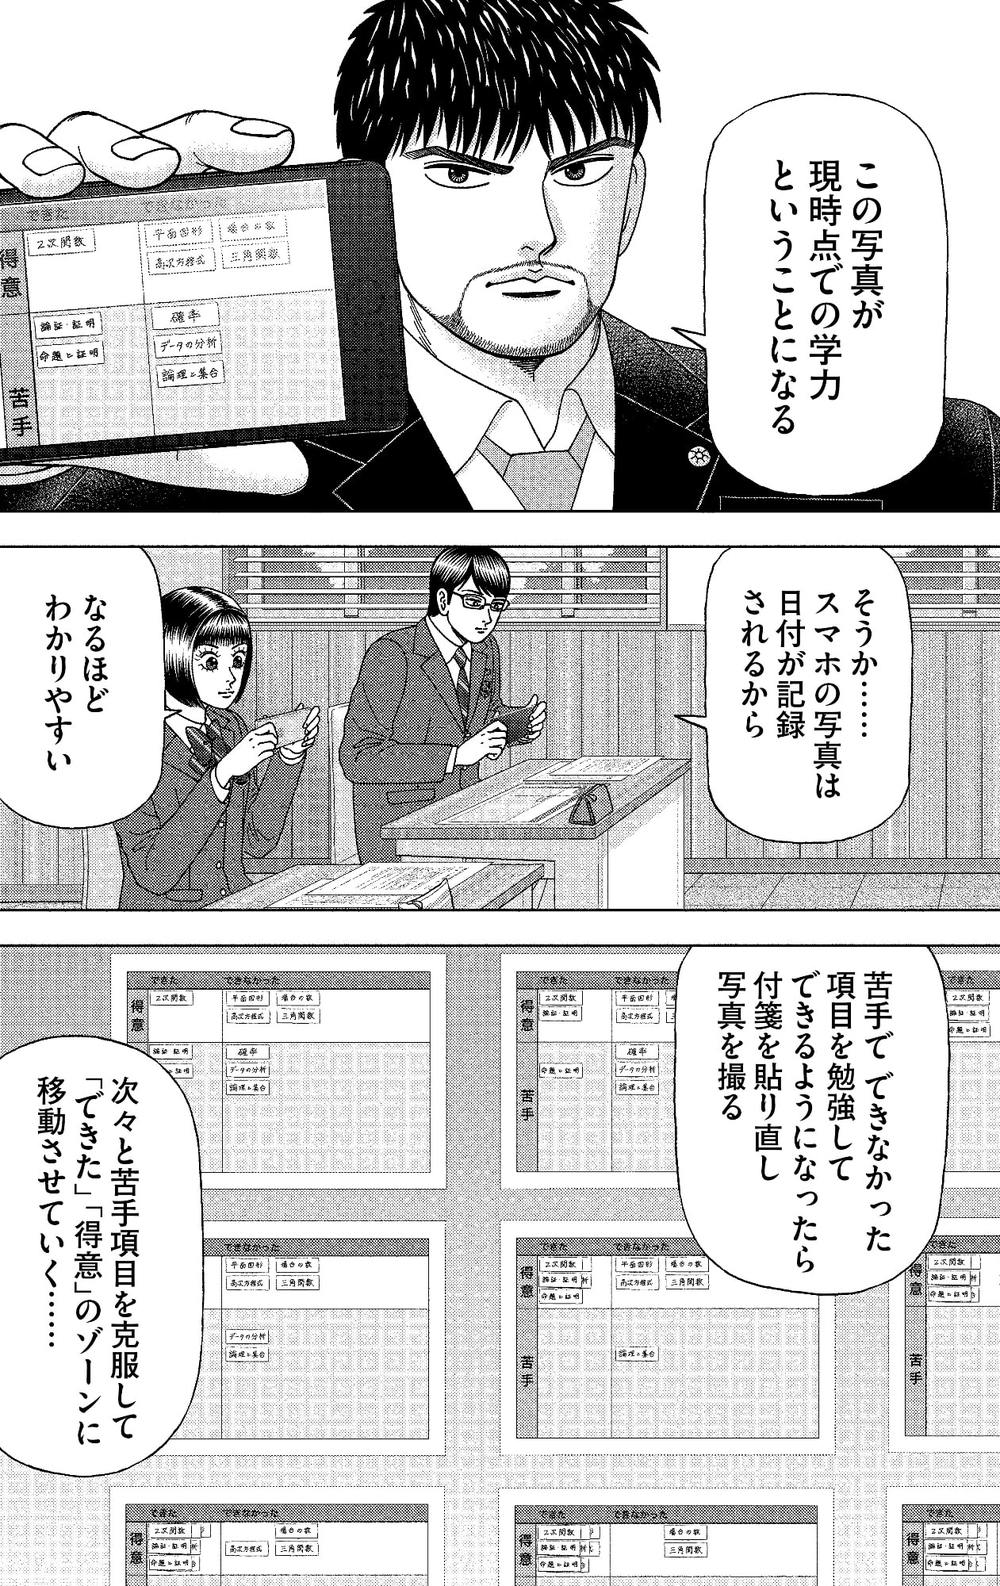 漫画!東大生が絶賛｢ドラゴン桜2｣の勉強法 | 学校・受験 ...